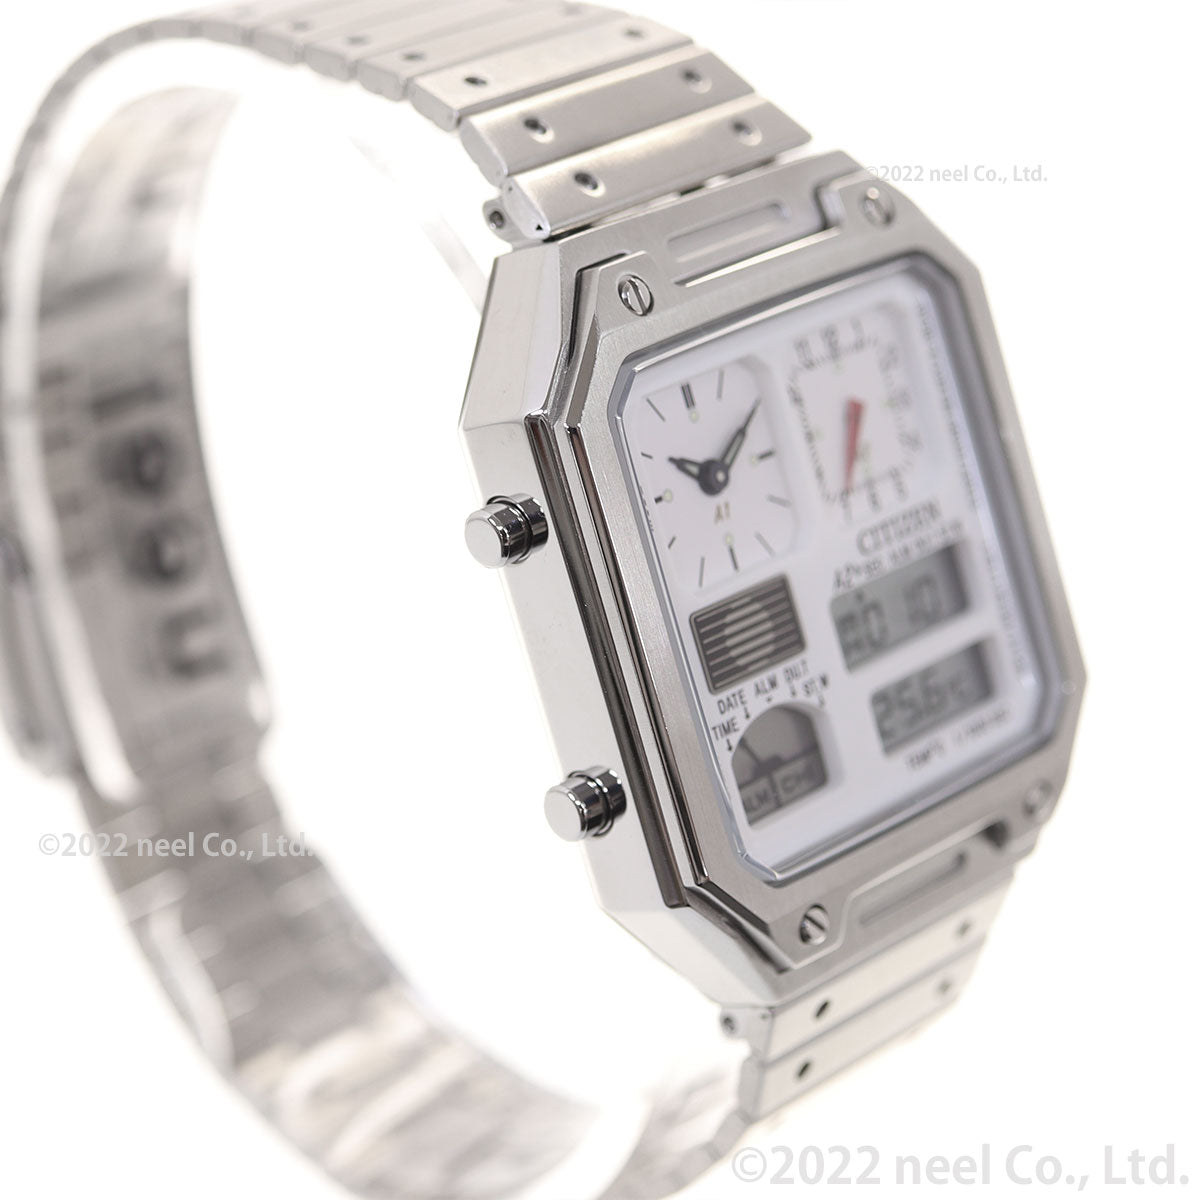 シチズン レコードレーベル RECORD LABEL JG2120-65A サーモセンサー 特定店取扱いモデル 腕時計 メンズ レディース CITIZEN THERMO SENSOR ホワイト